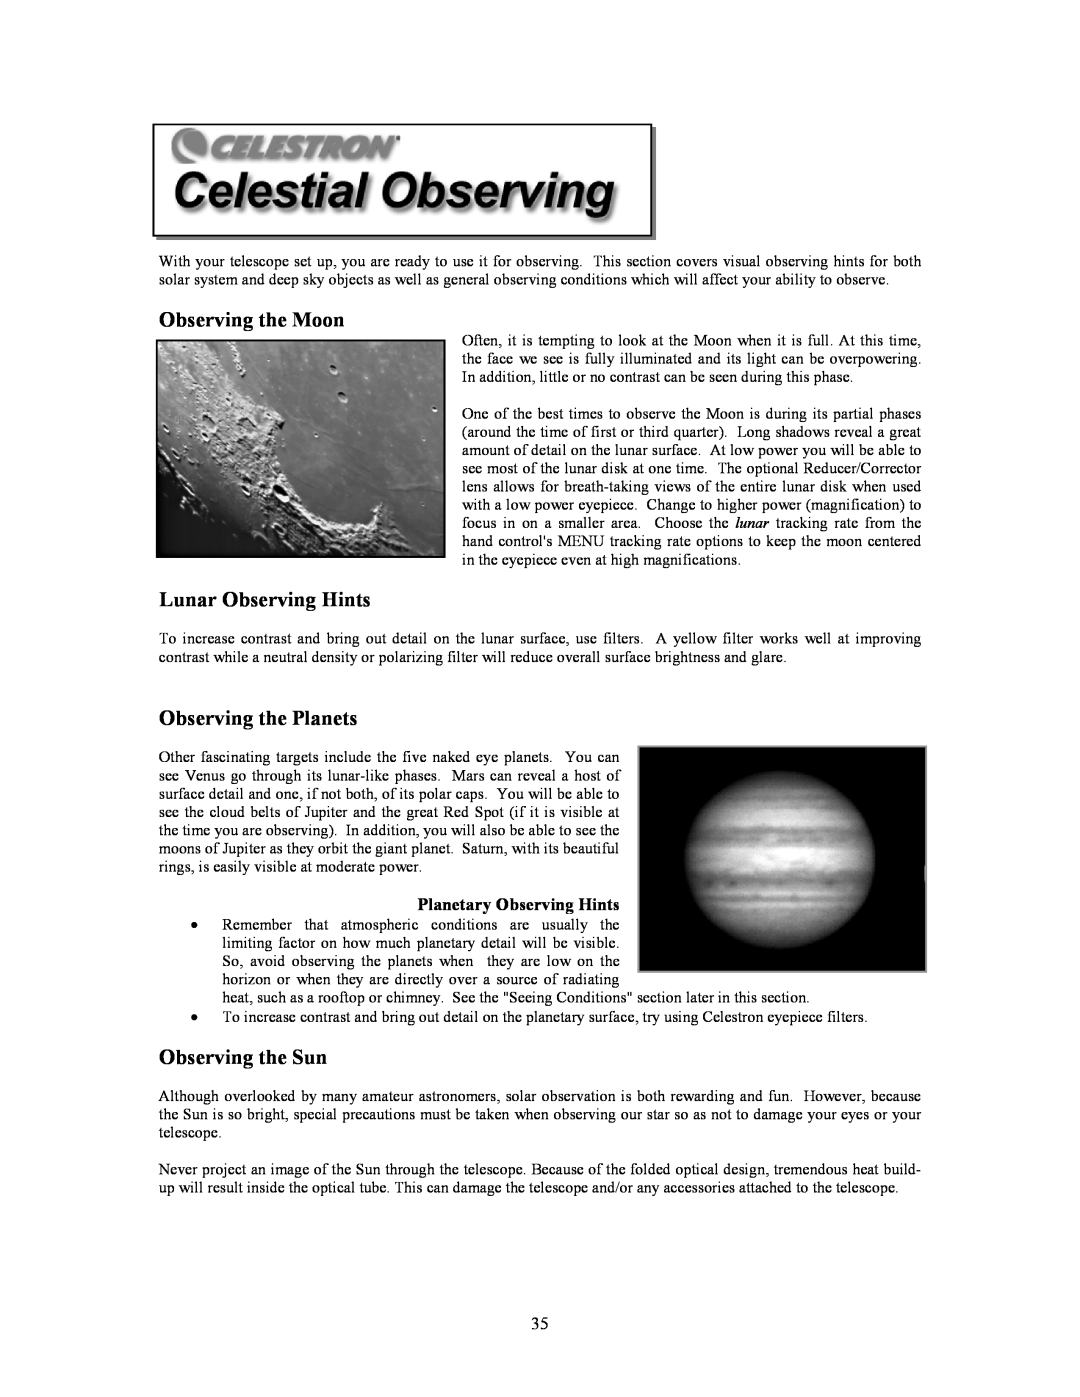 Celestron C9.25-S, C8-S, C5-S Observing the Moon, Lunar Observing Hints, Observing the Planets, Observing the Sun 